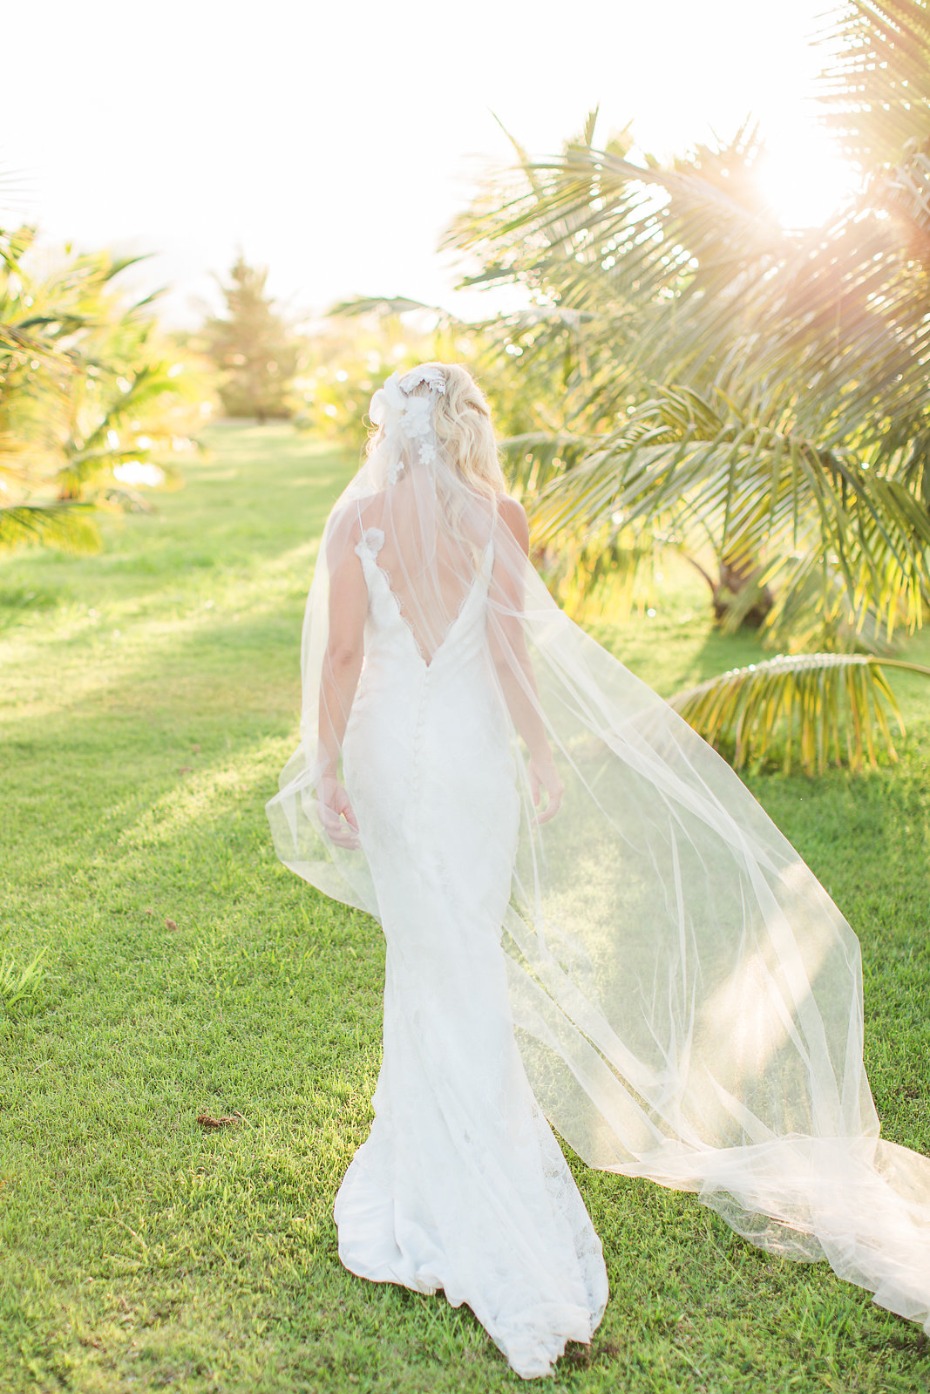 Beach bride look and flowing veil